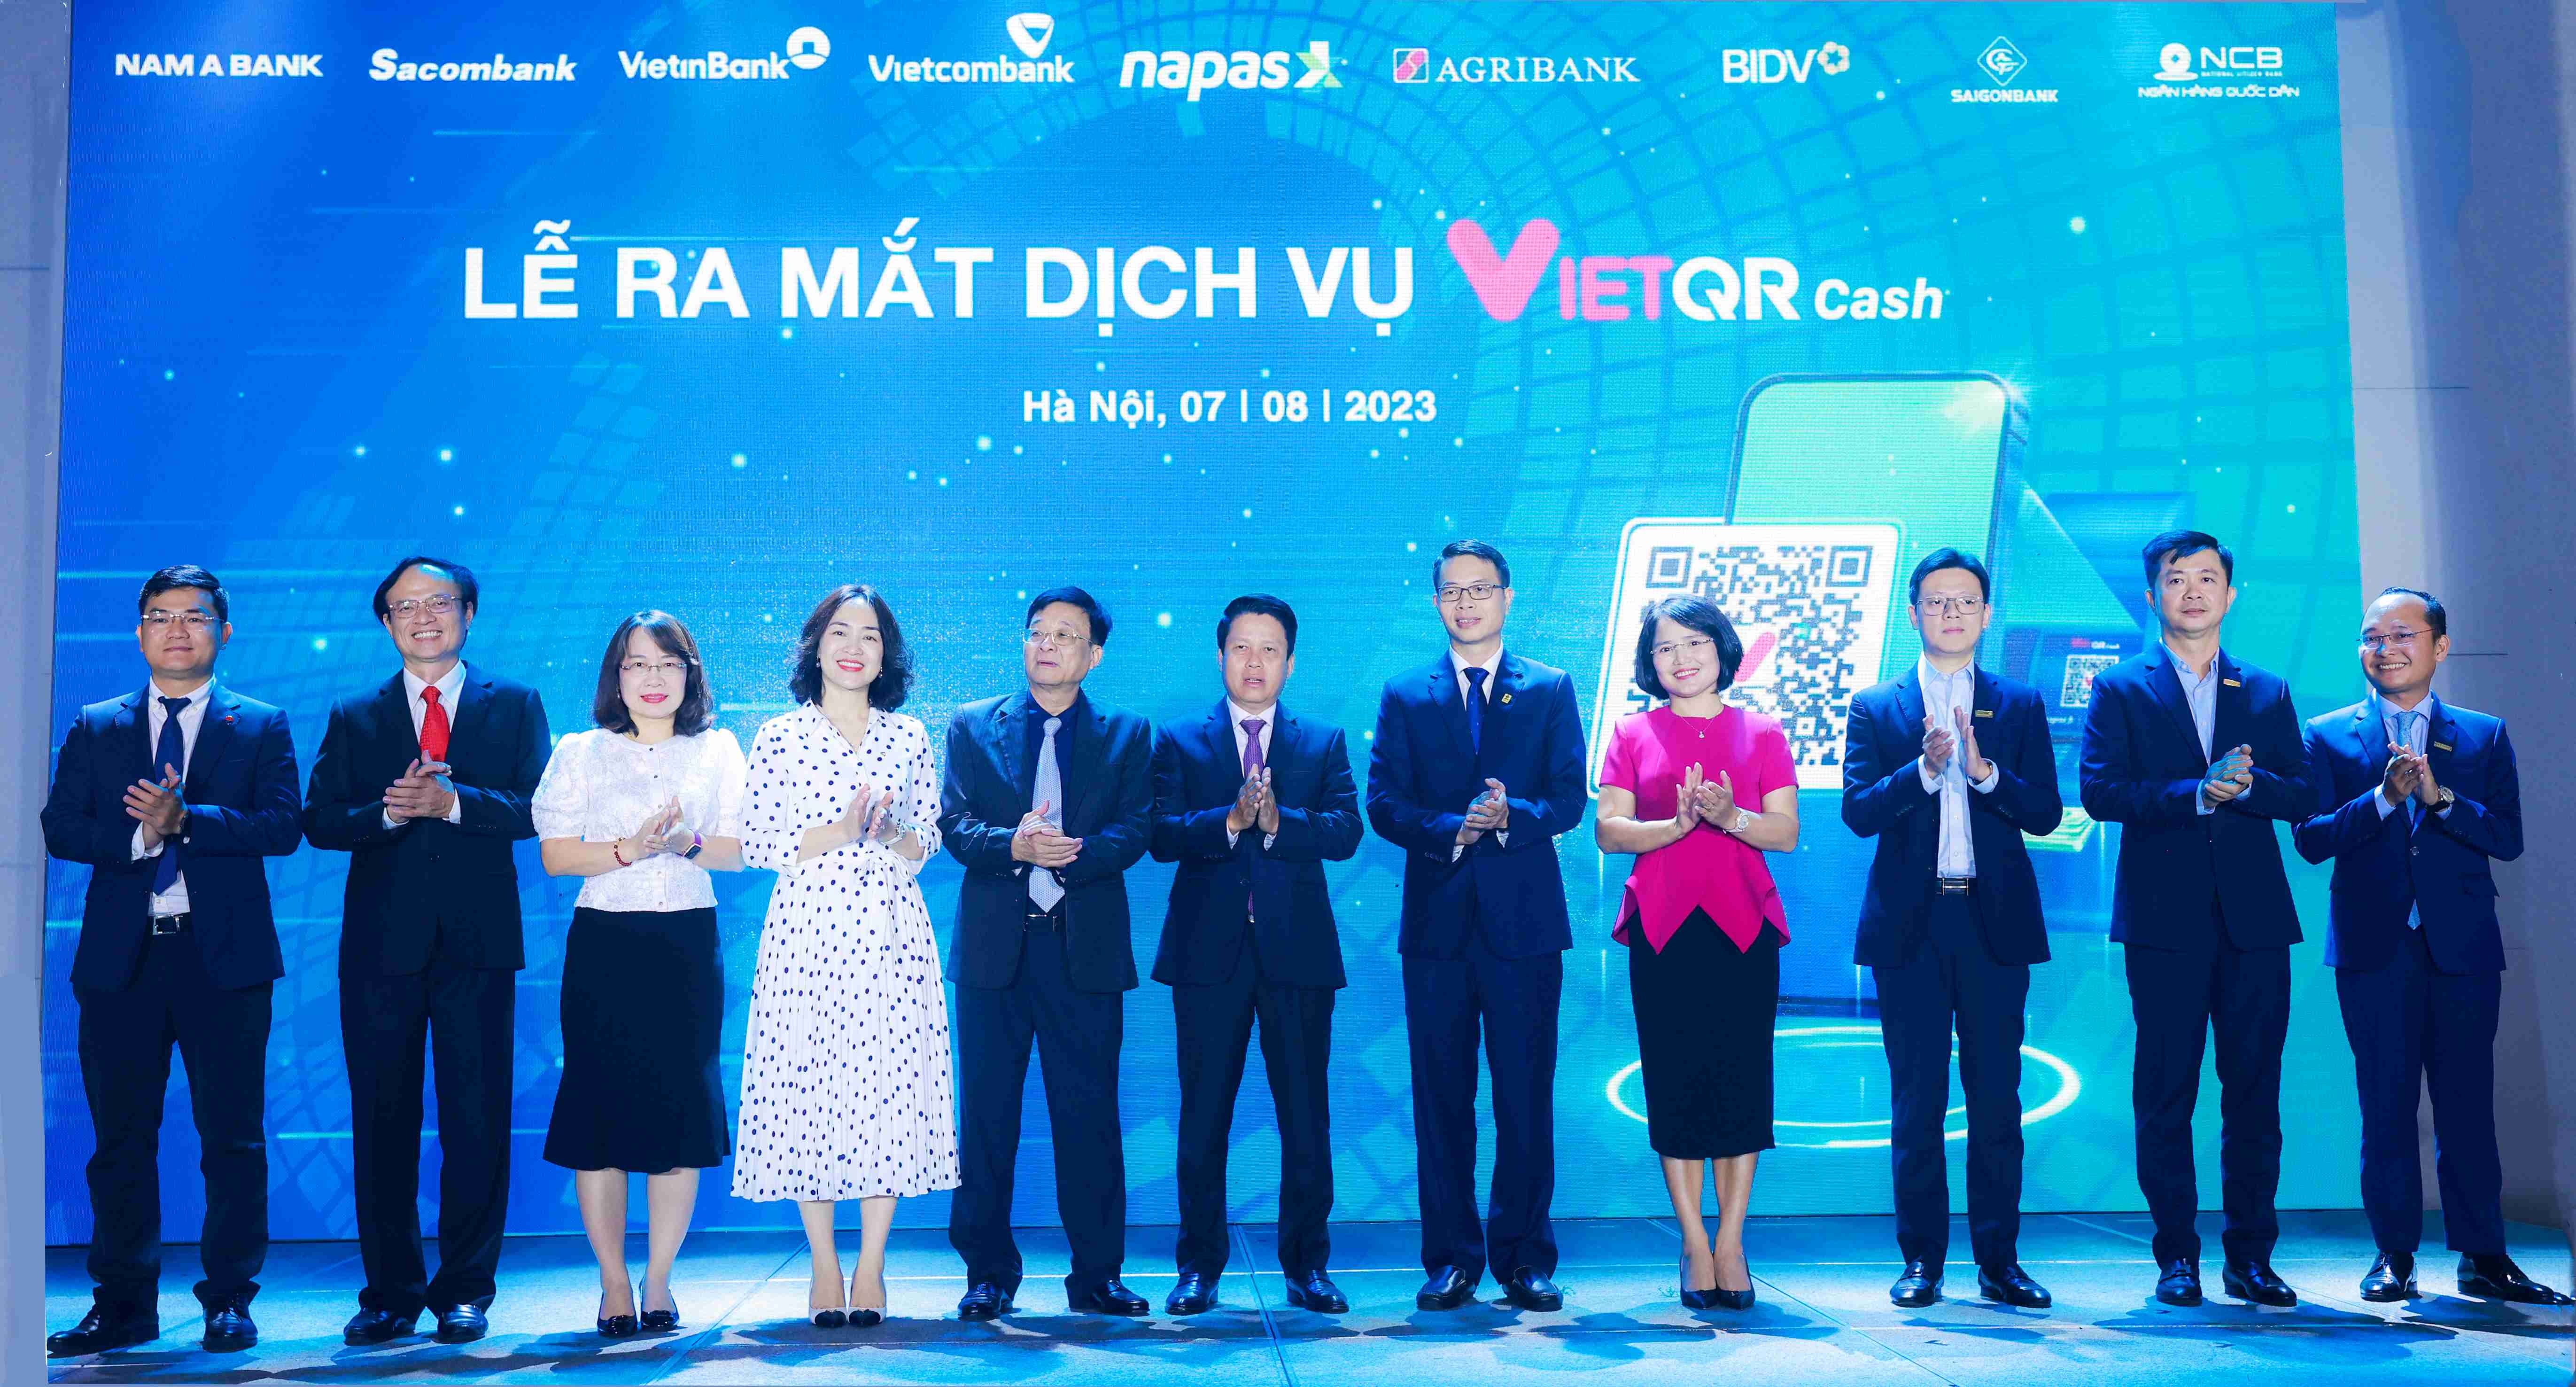 Lễ ra mắt dịch vụ VietQRCash, Nam A Bank là 1 trong 8 ngân hàng đầu tiên trải khai dịch vụ này